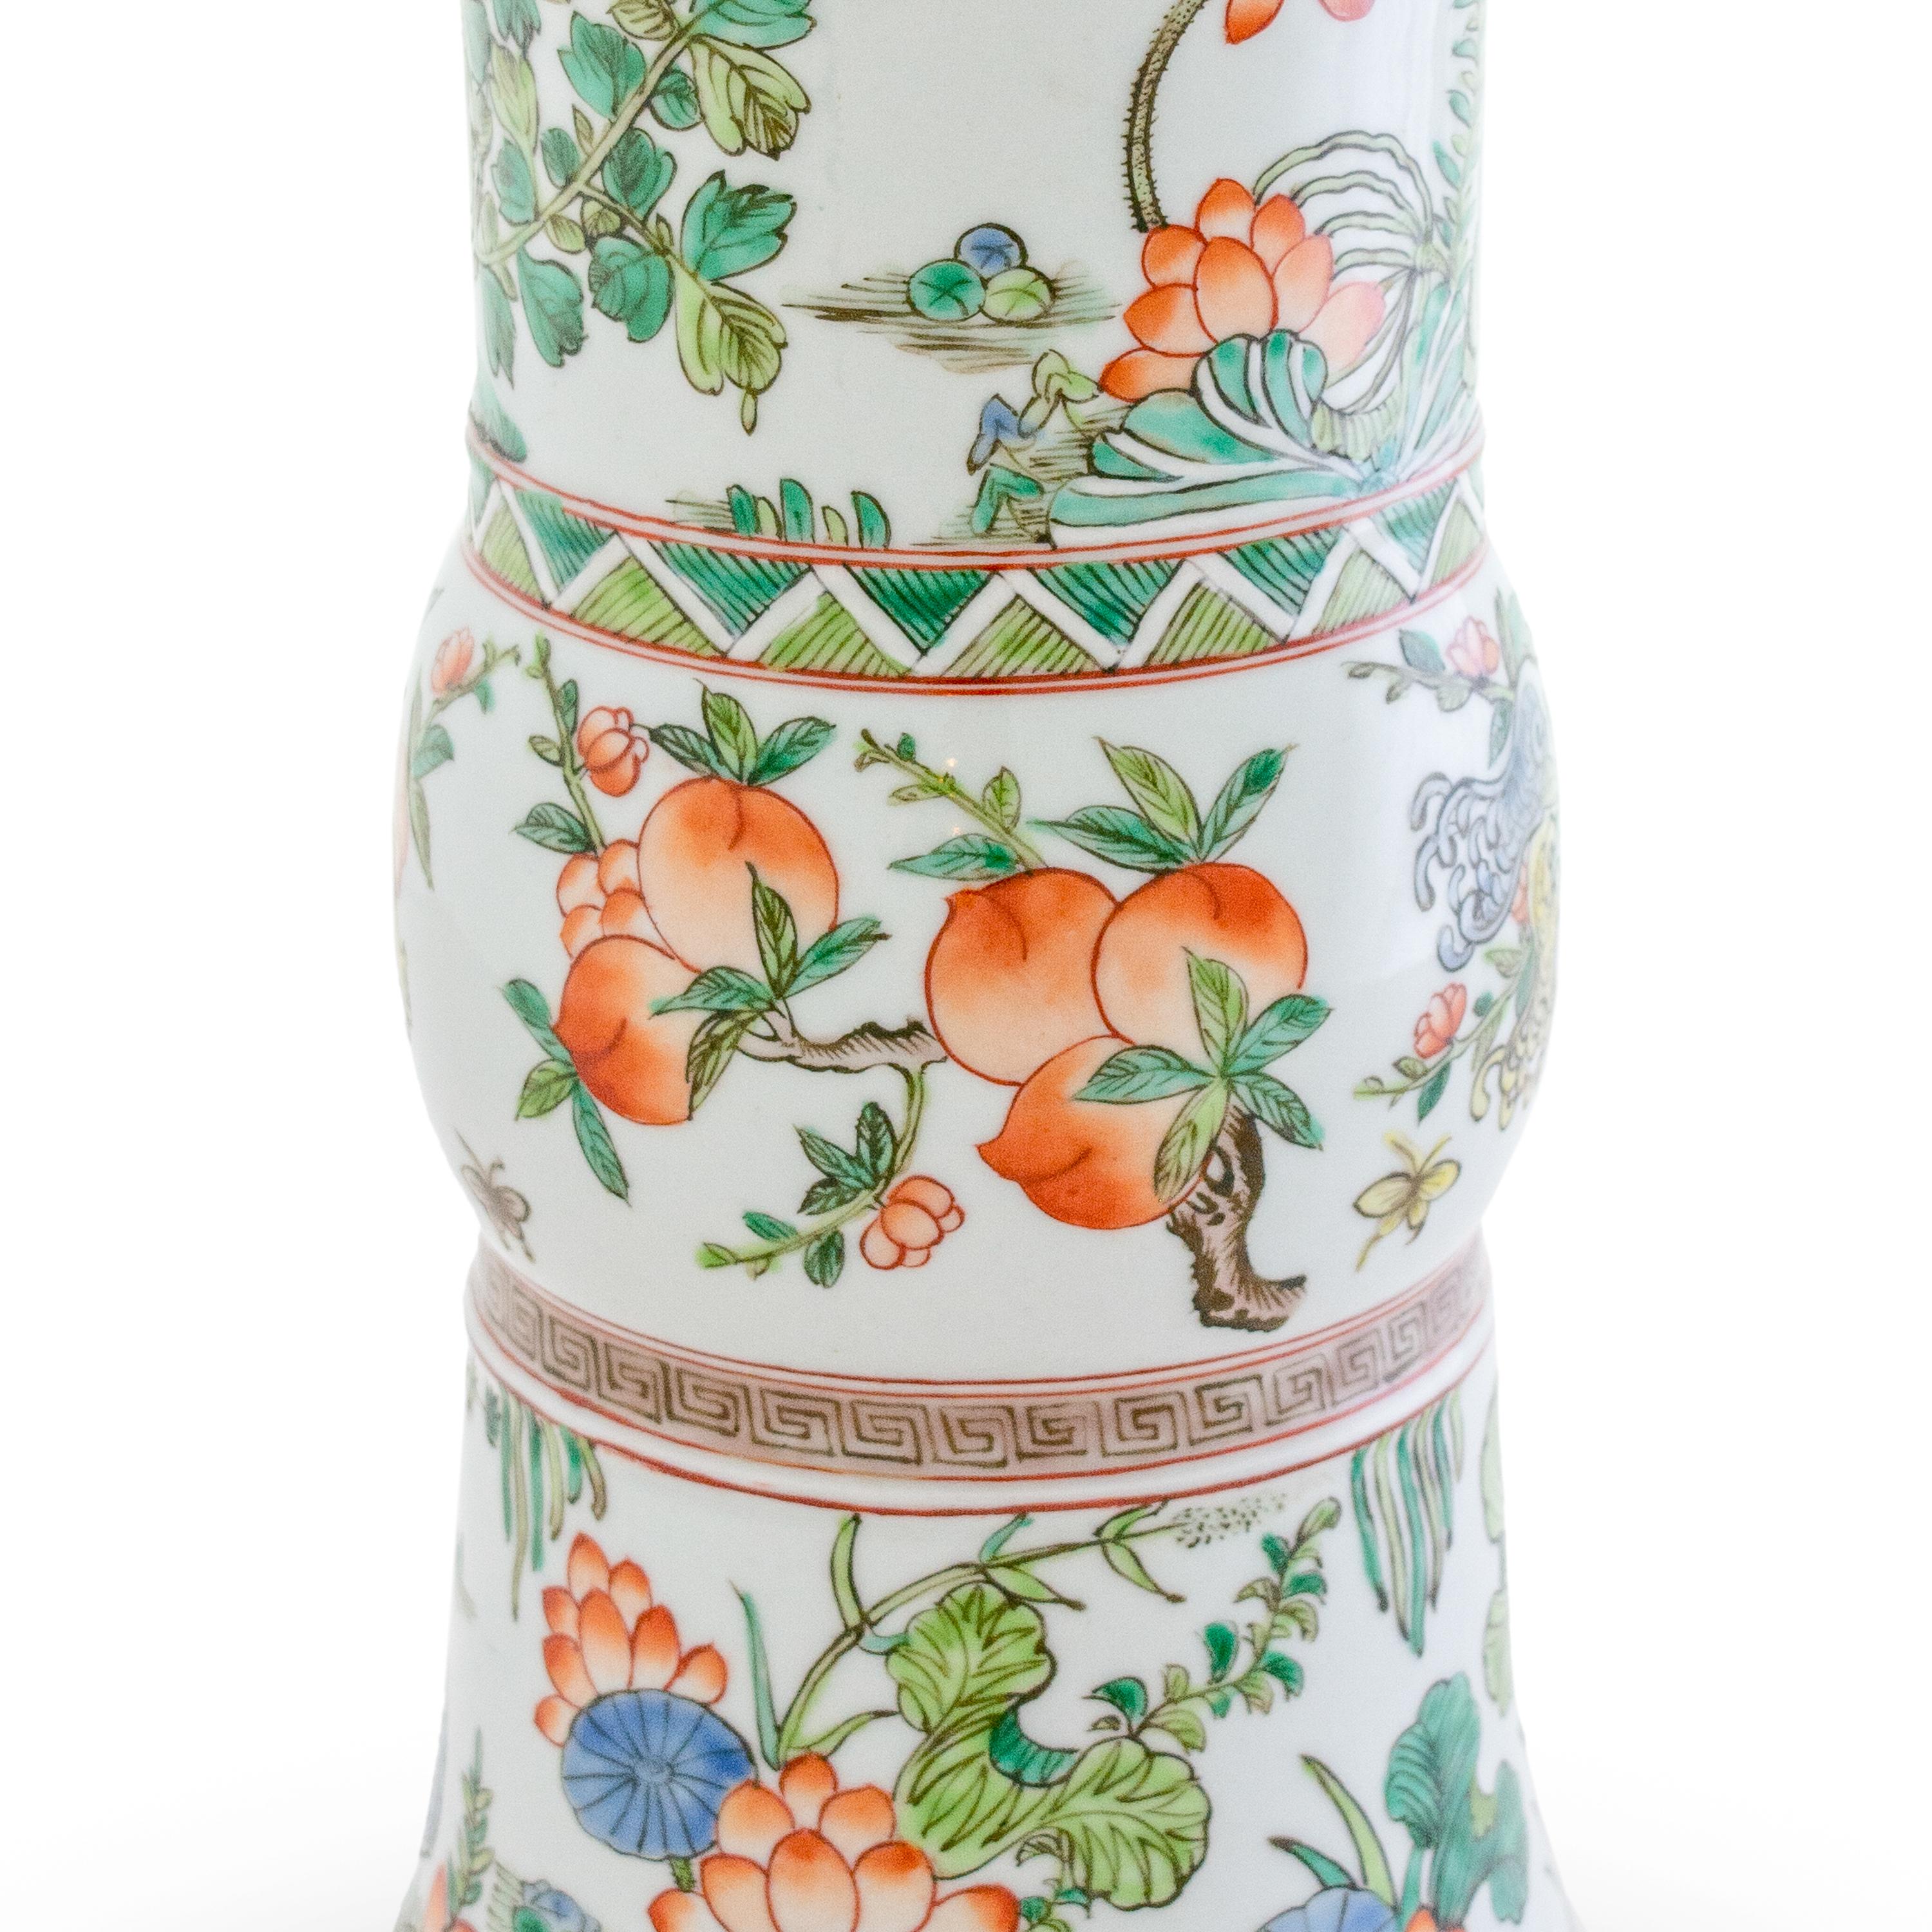 Il s'agit d'une belle paire de vases trompettes chinois, peints à la main dans une palette délicate, représentant des oiseaux, des fleurs et des feuillages colorés.